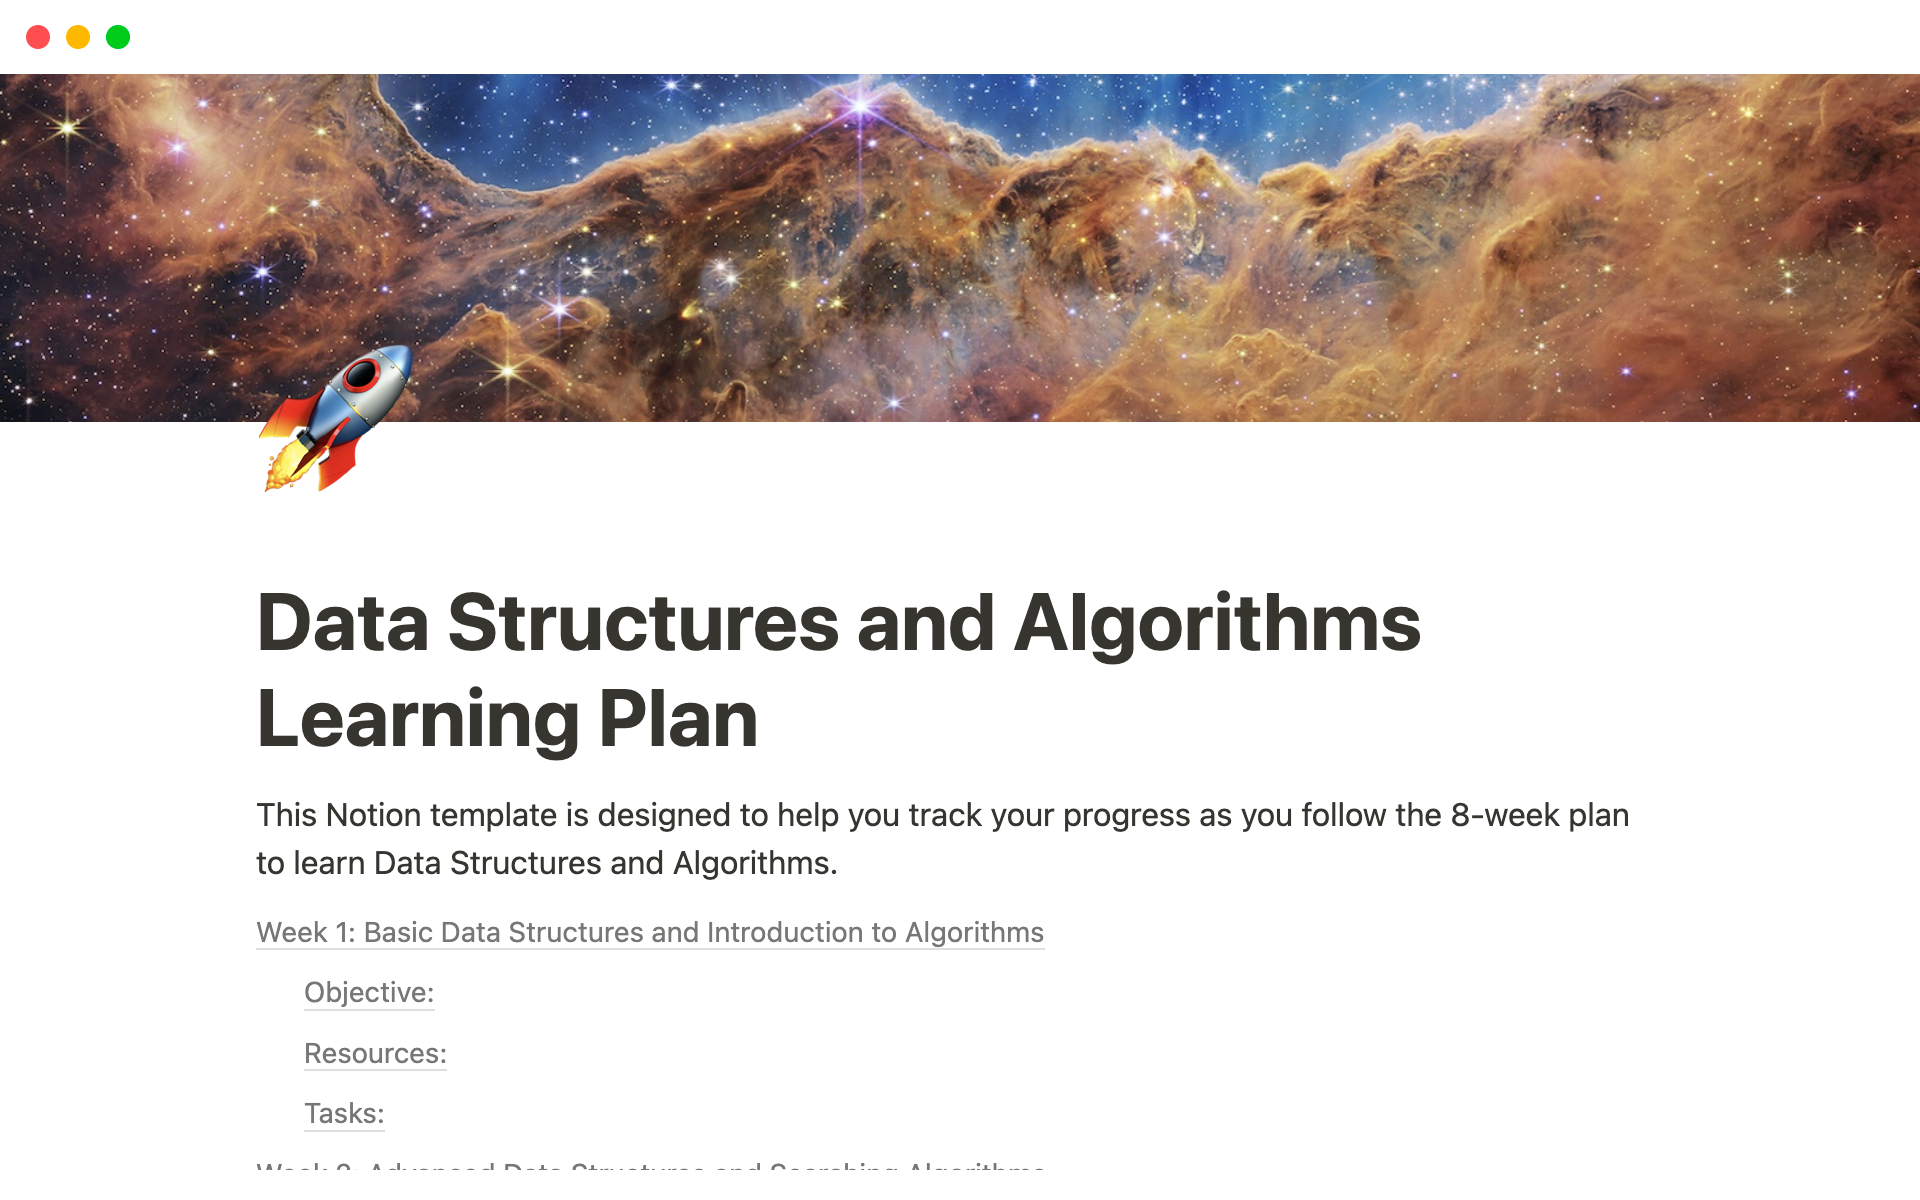 Aperçu du modèle de Data Structures and Algorithms Learning Plan